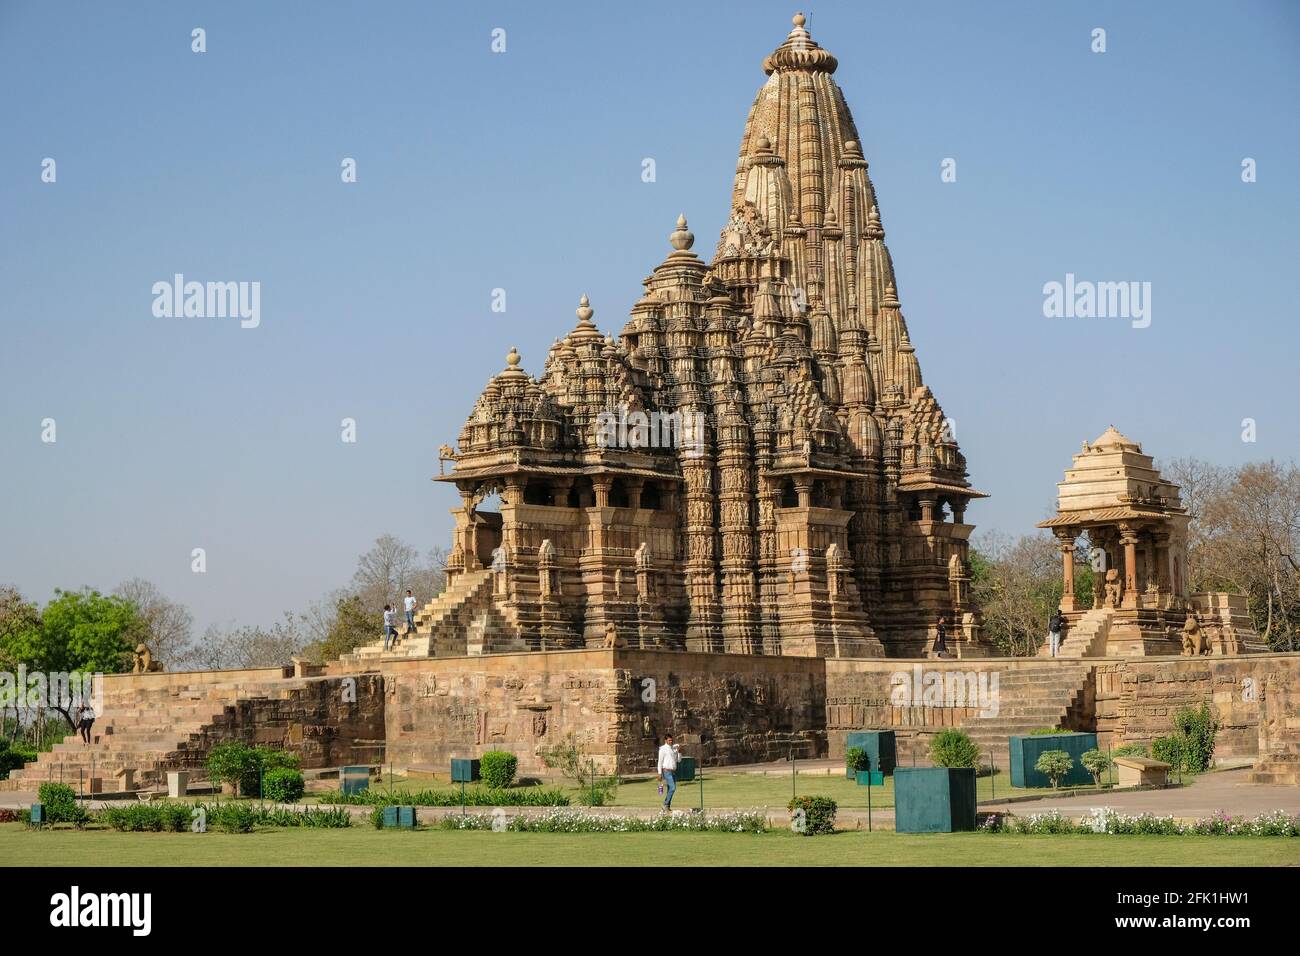 The Kandariya Mahadev Temple in Khajuraho, Madhya Pradesh, India. Forms part of the Khajuraho Group of Monuments, a UNESCO World Heritage Site. Stock Photo